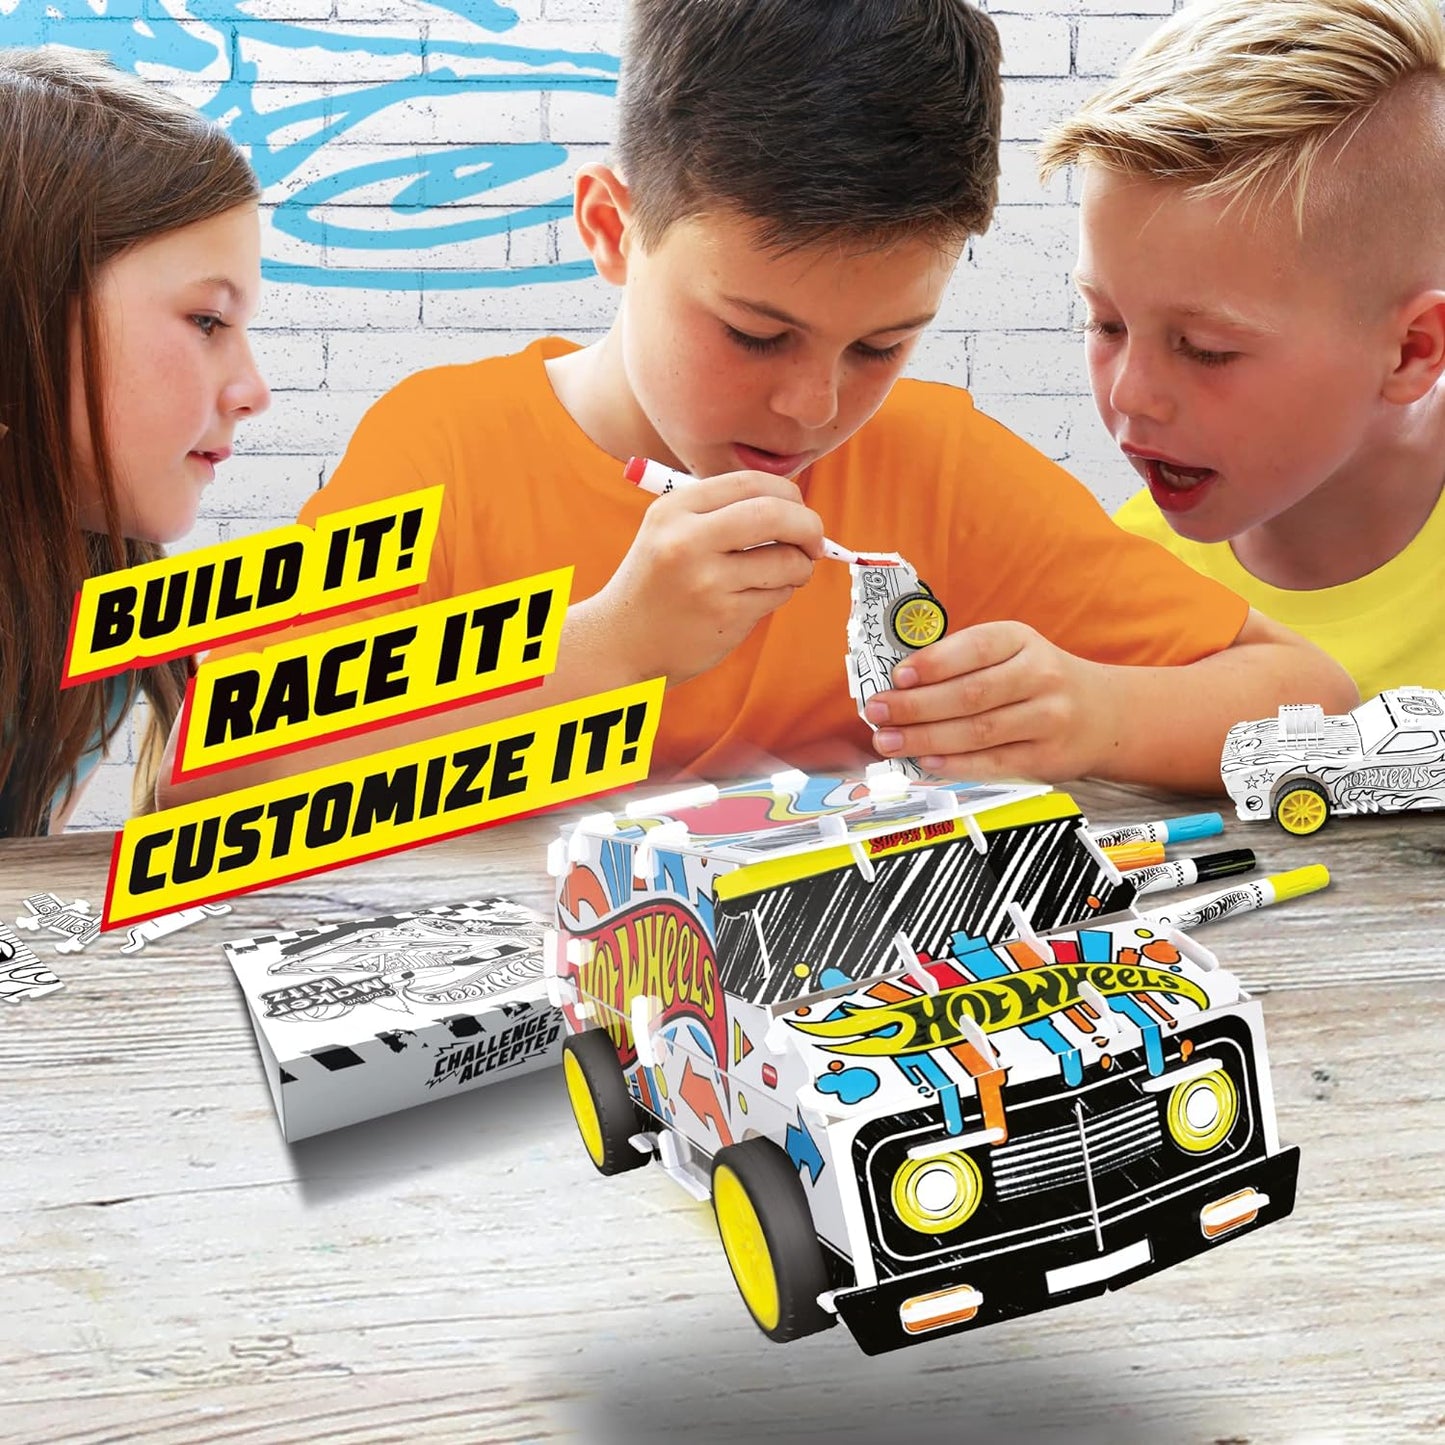 BLADEZ Super van personalizada Hot Wheels, van DIY, faça seu próprio/construa seu próprio, veículo retrátil para crianças, personalizável com canetas e adesivos, Creative Maker Kitz por Bladez Toyz